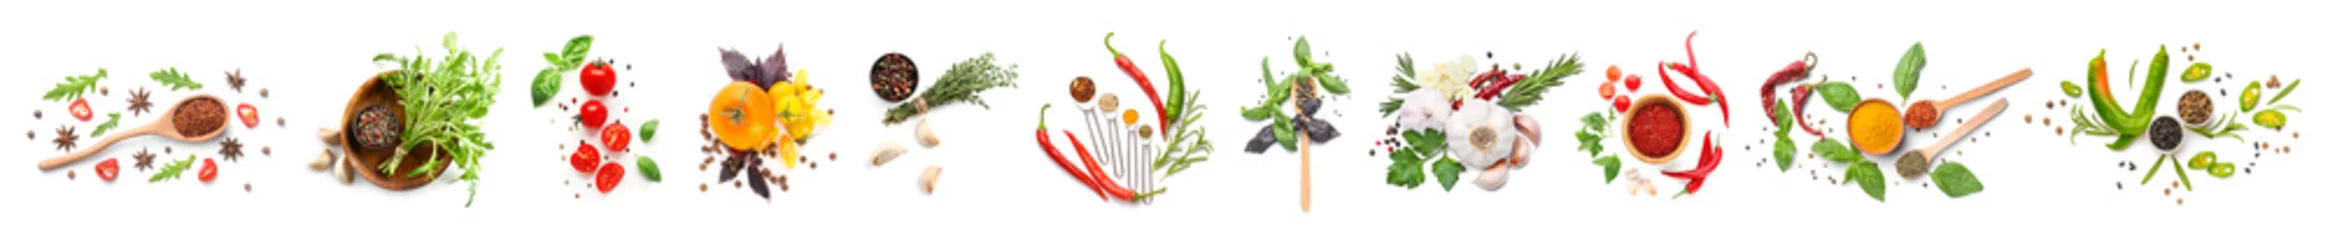 Vlies Fototapete Frisches Gemüse Verschiedene frische Gewürze, Kräuter und Gemüse auf weißem Hintergrund